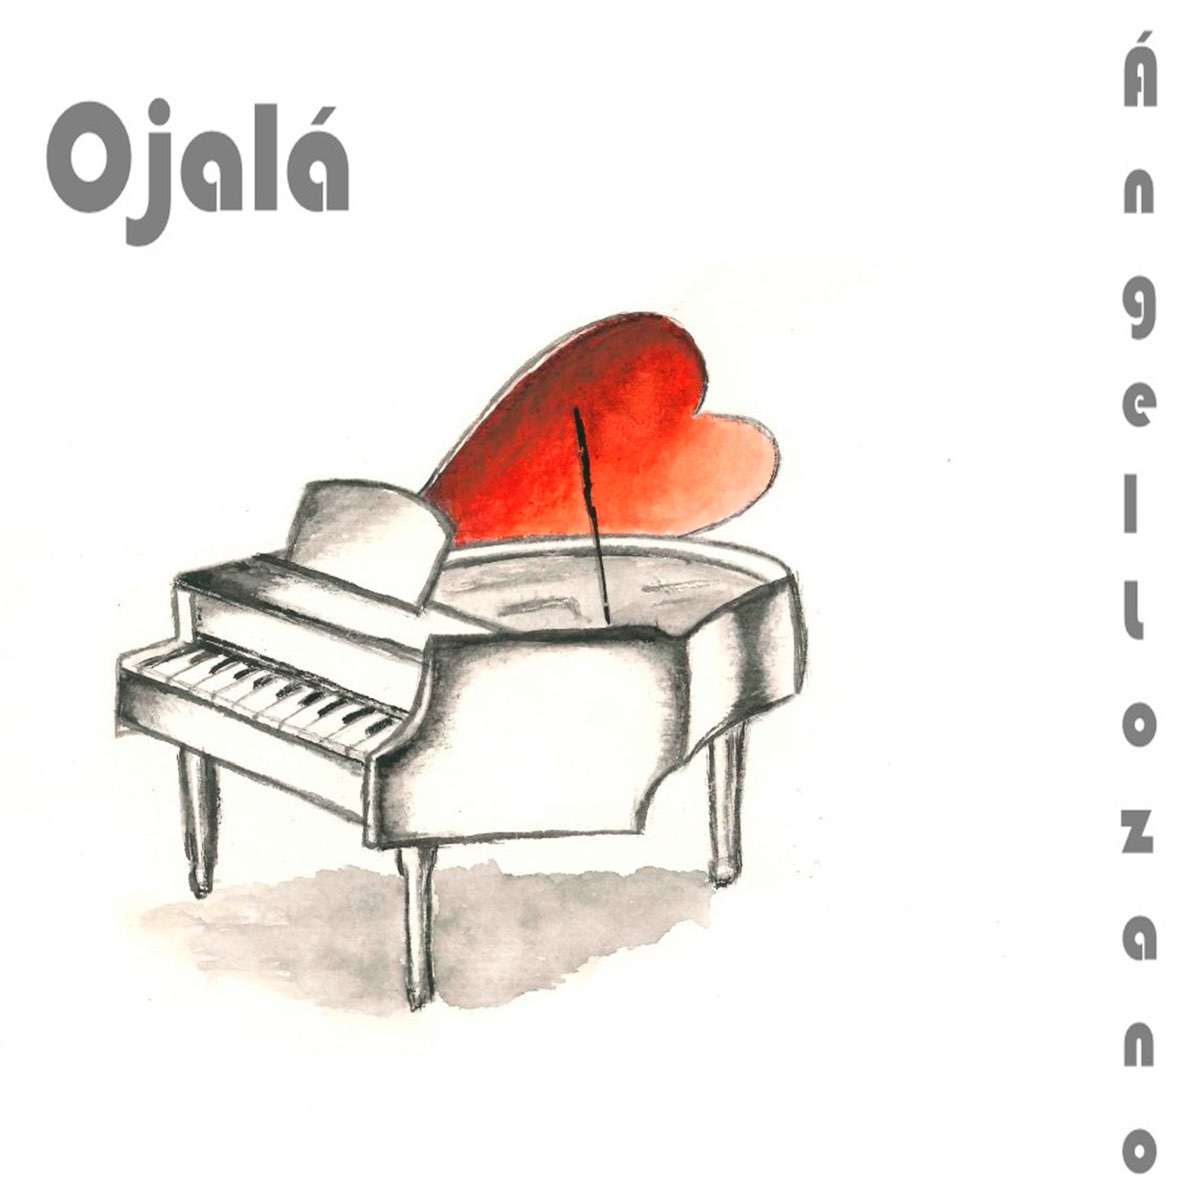 Ojalá (Ojalá) - Single de l'artista Angel Lozano a l'Apple Music